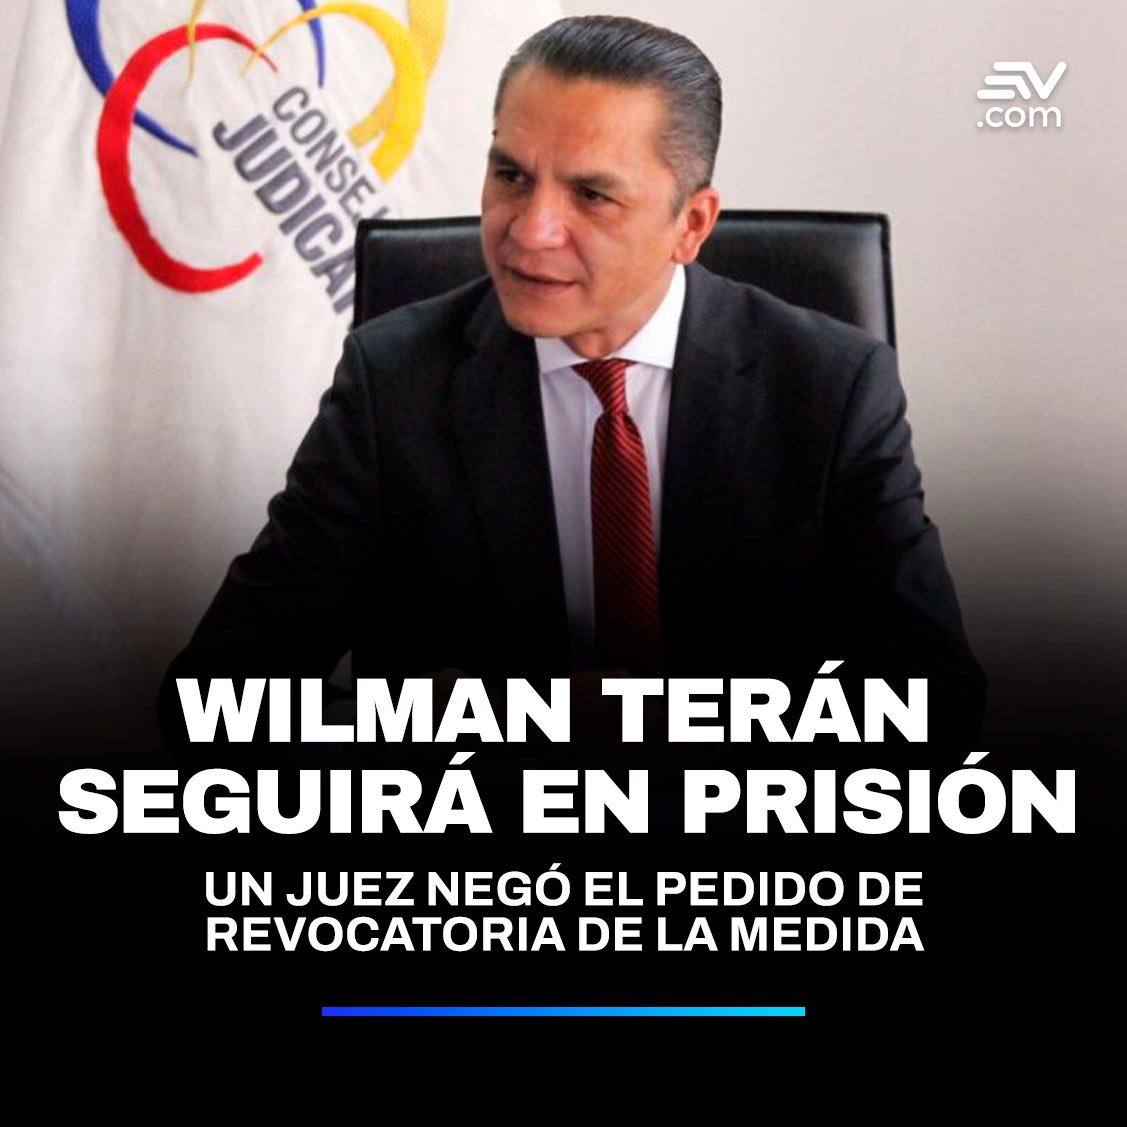 #Noticias | El extitular del Consejo de la Judicatura, #WilmanTerán permanecerá preso en la cárcel La Roca en Guayaquil. Más detalles▶️ bit.ly/3xSTmW1